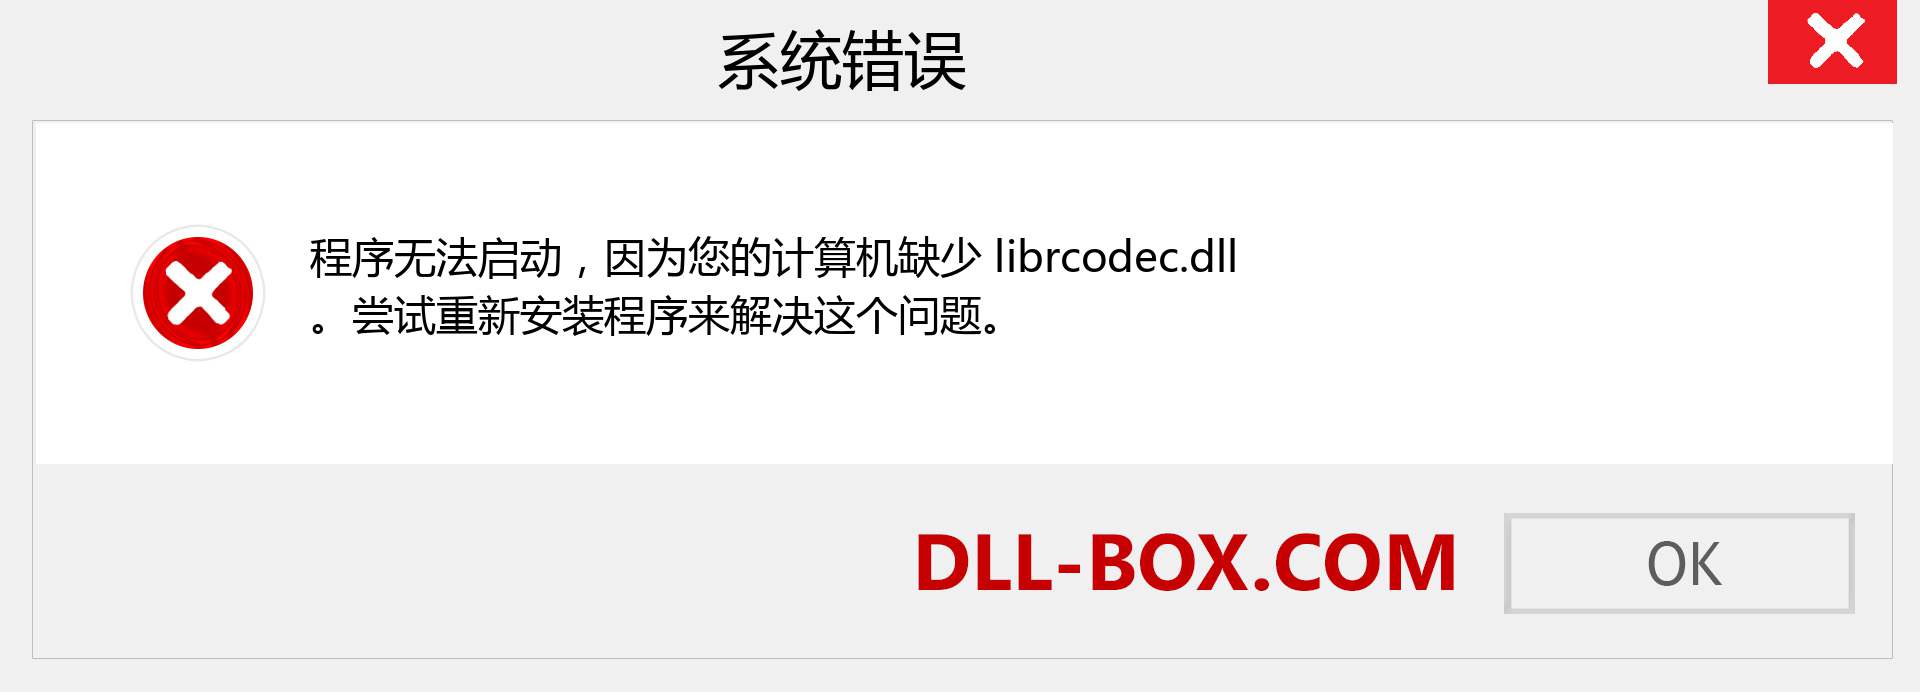 librcodec.dll 文件丢失？。 适用于 Windows 7、8、10 的下载 - 修复 Windows、照片、图像上的 librcodec dll 丢失错误